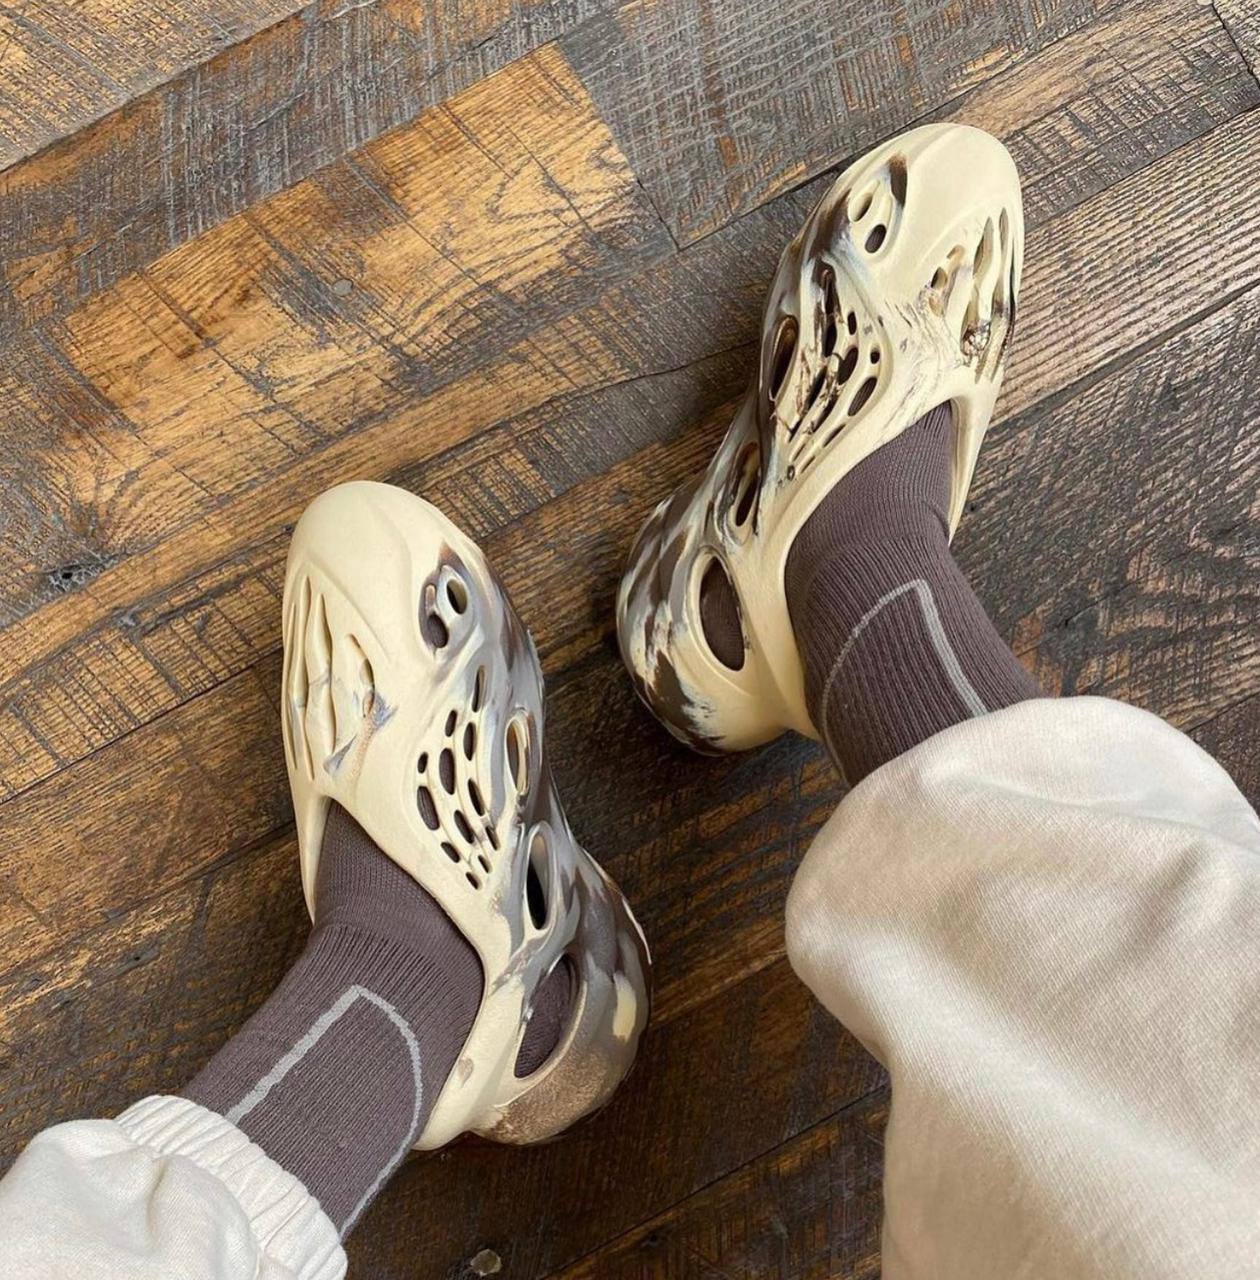 Adidas Yeezy Foam Runner Sneaker For Boys